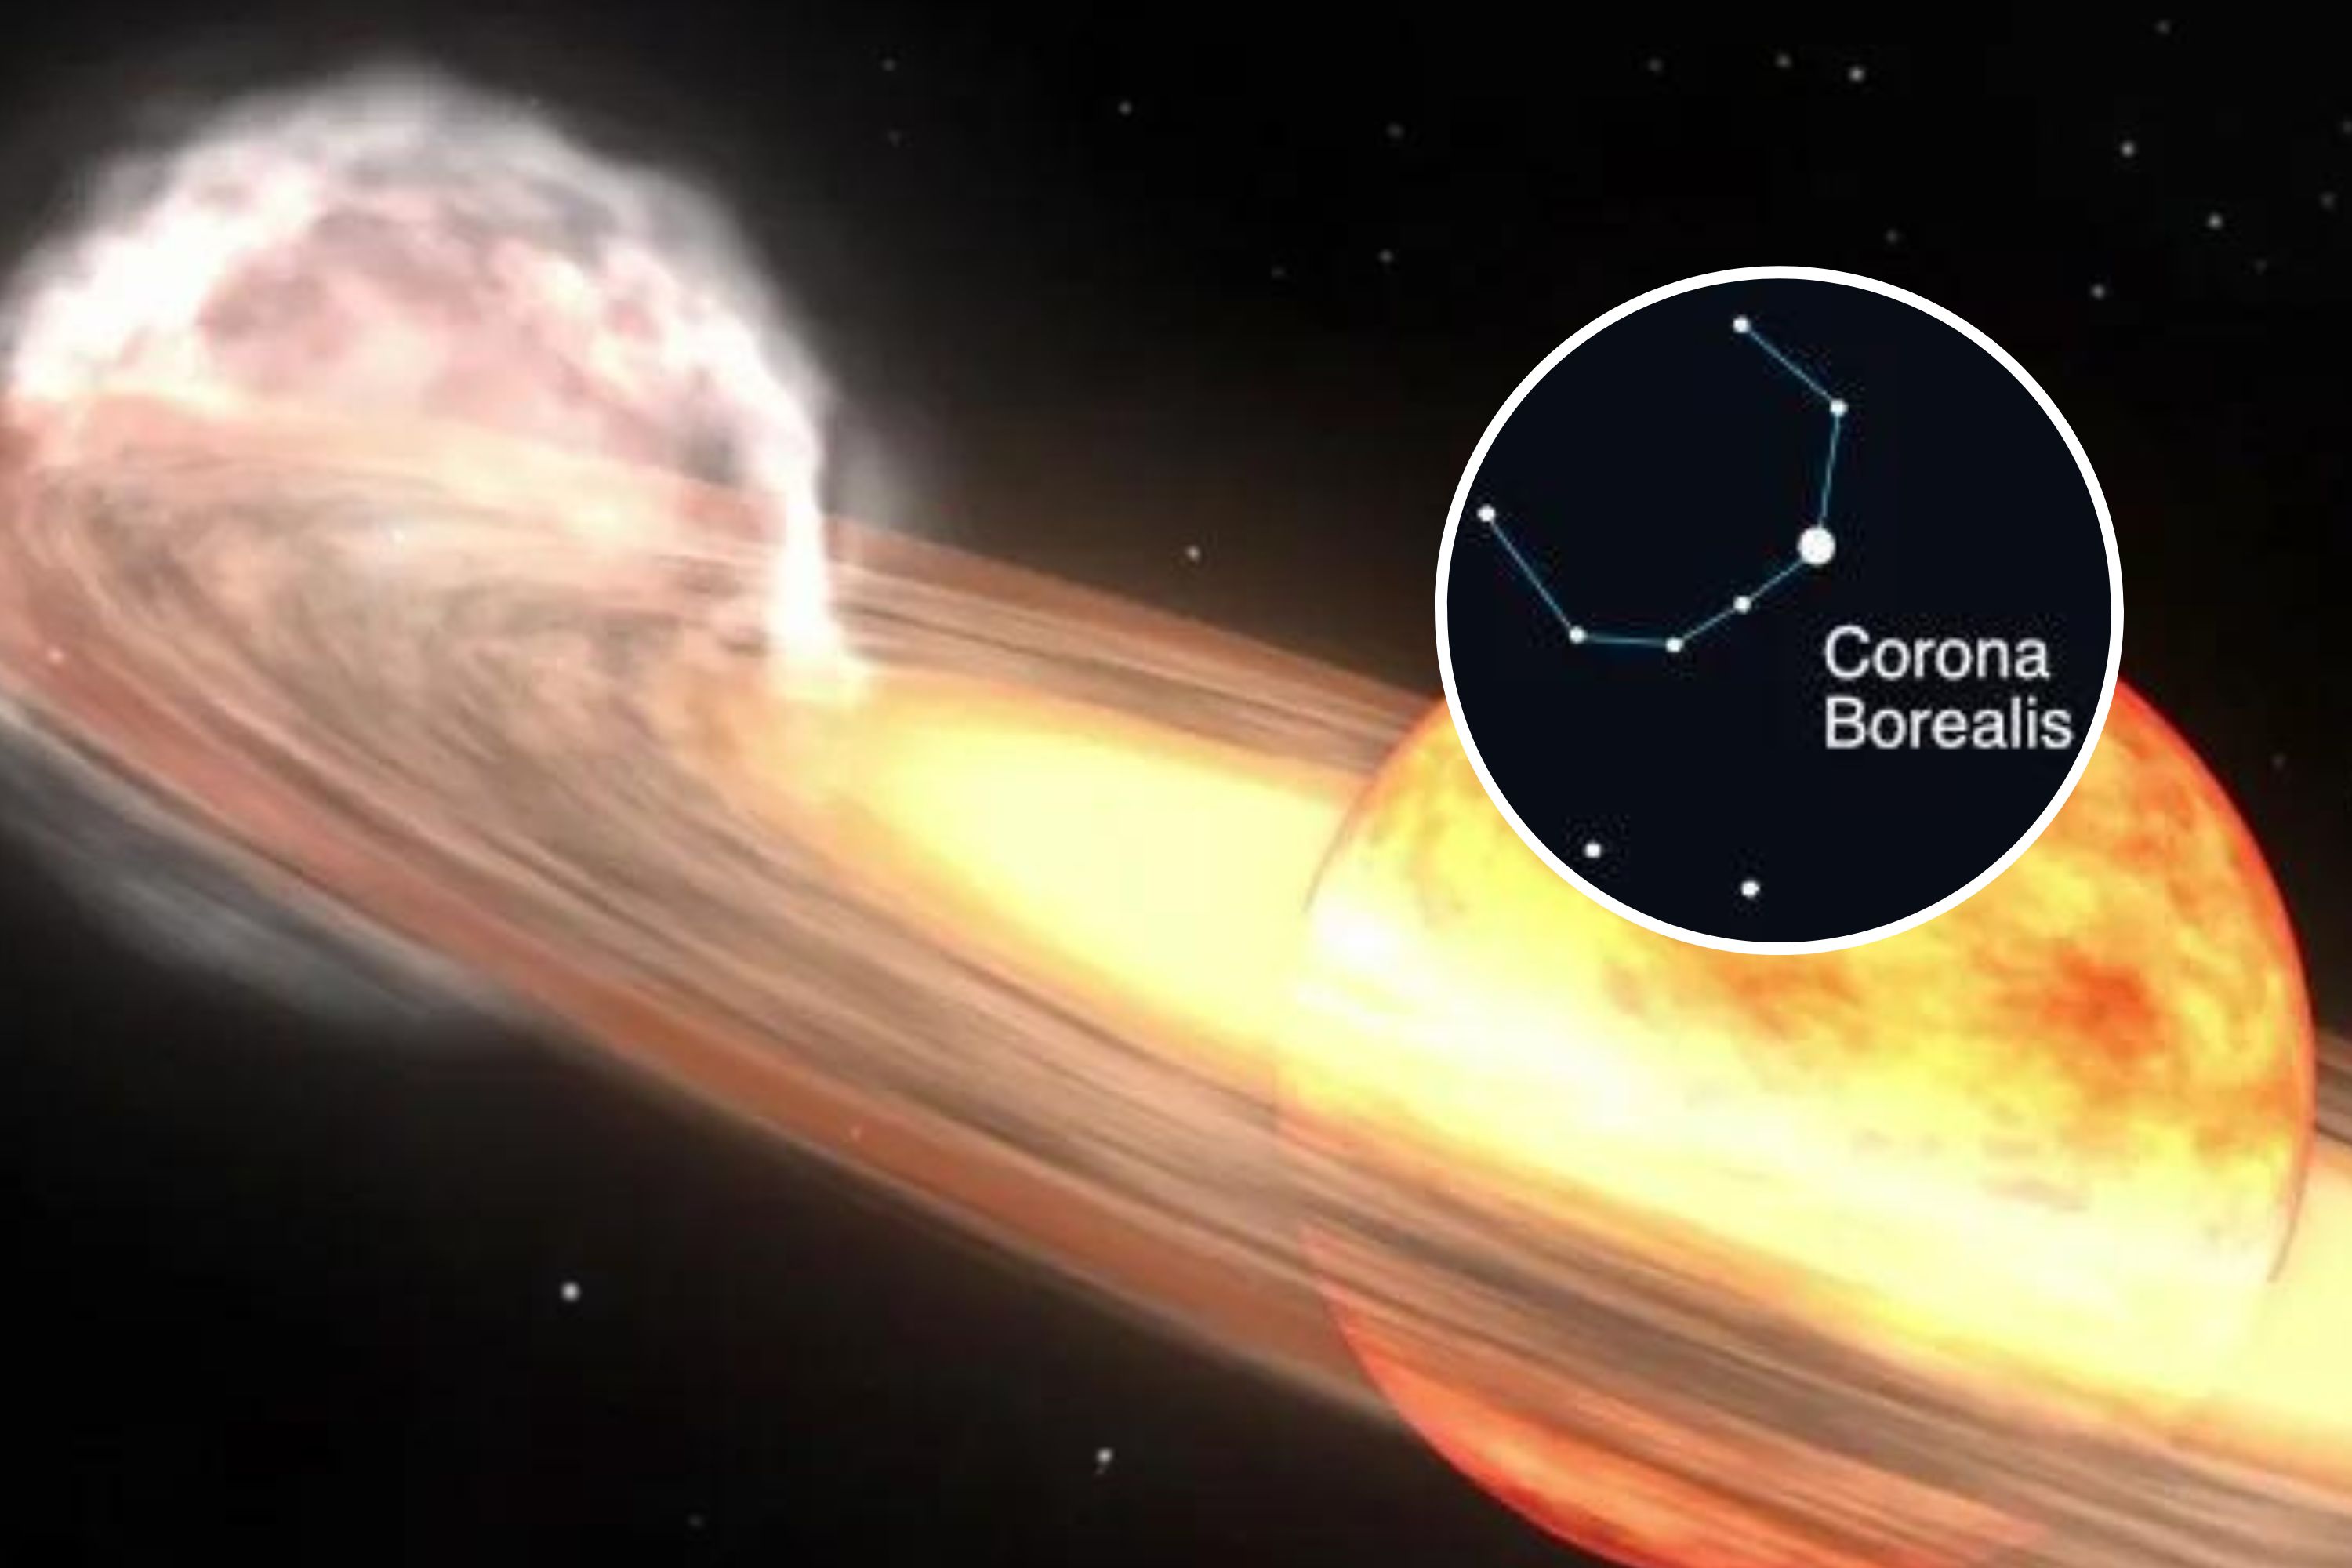 Comment voir l’explosion Nova « unique dans une vie » dans le ciel américain